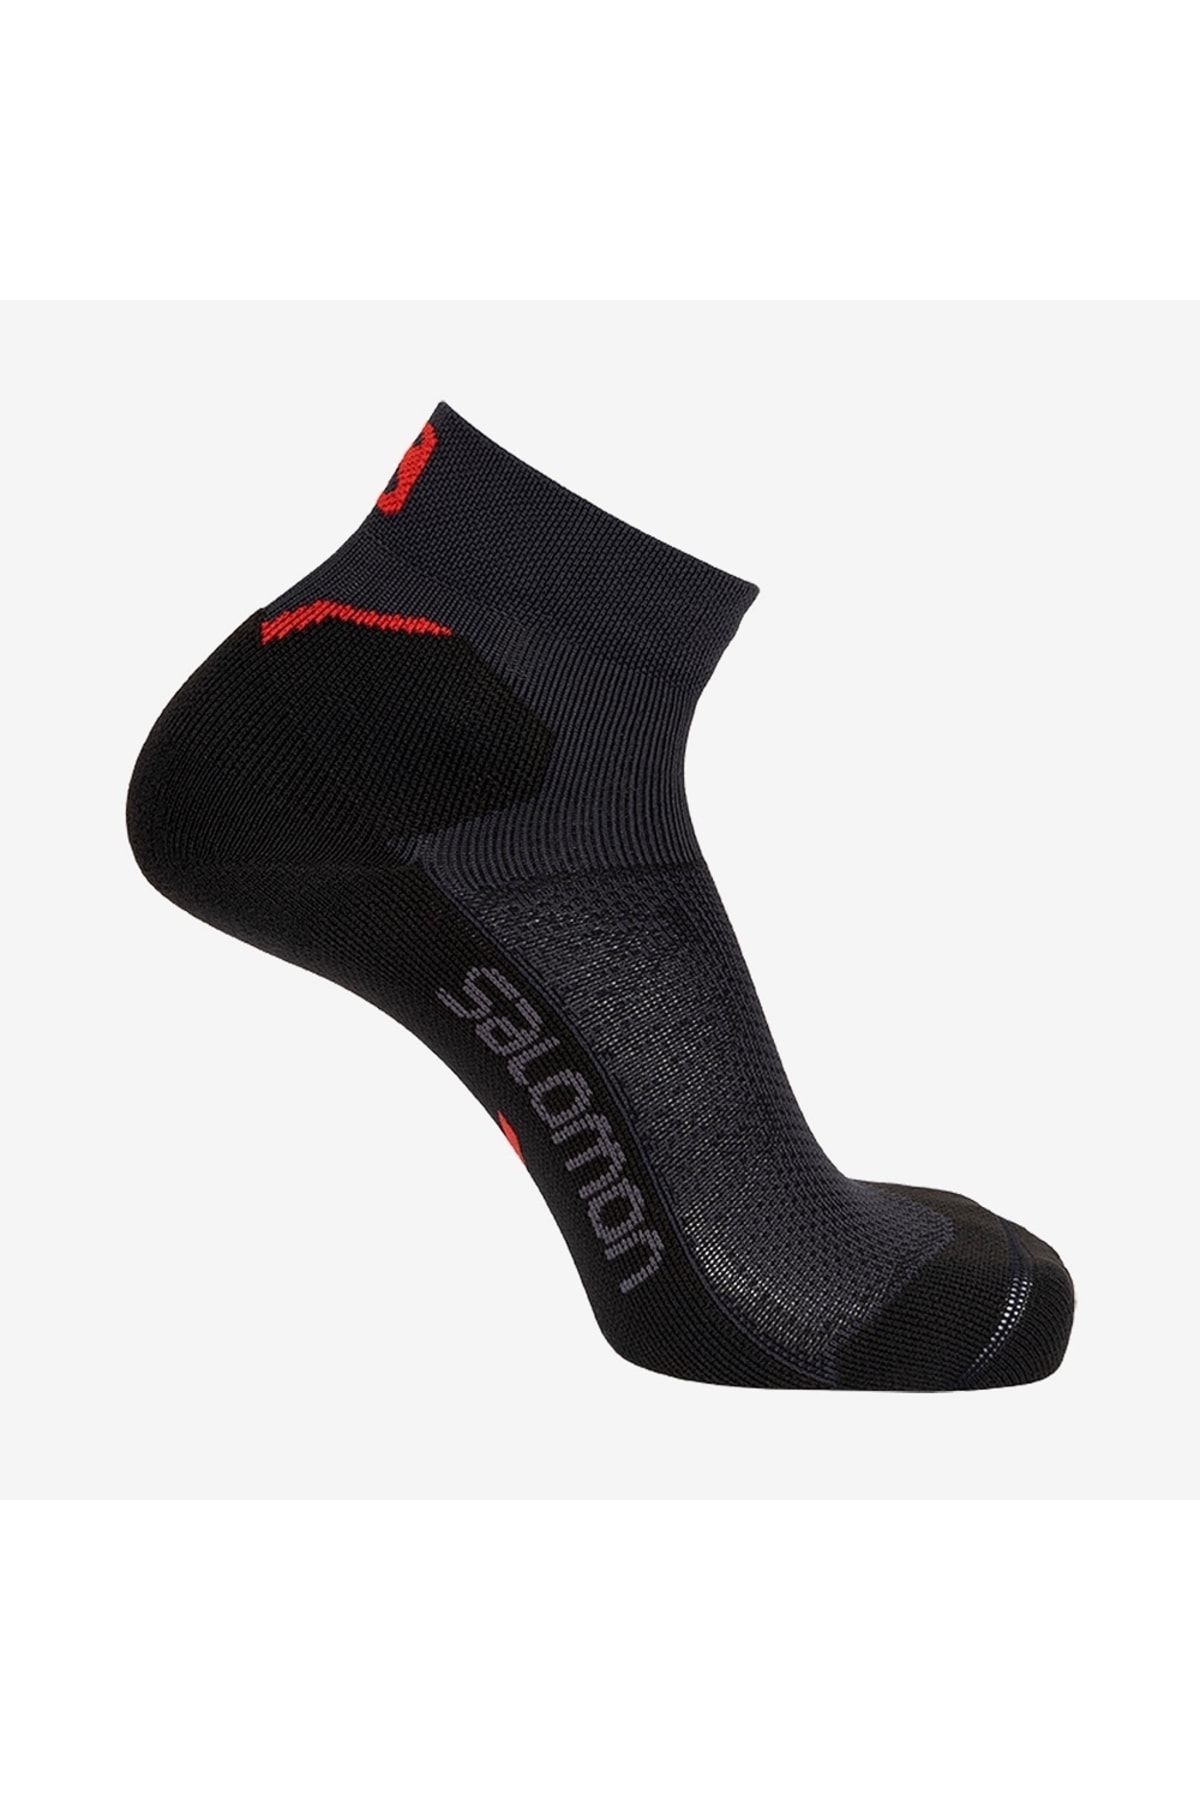 Salomon Lc1780900-25914 Speedcross Ankle Dx+sx Unisex Spor Çorap